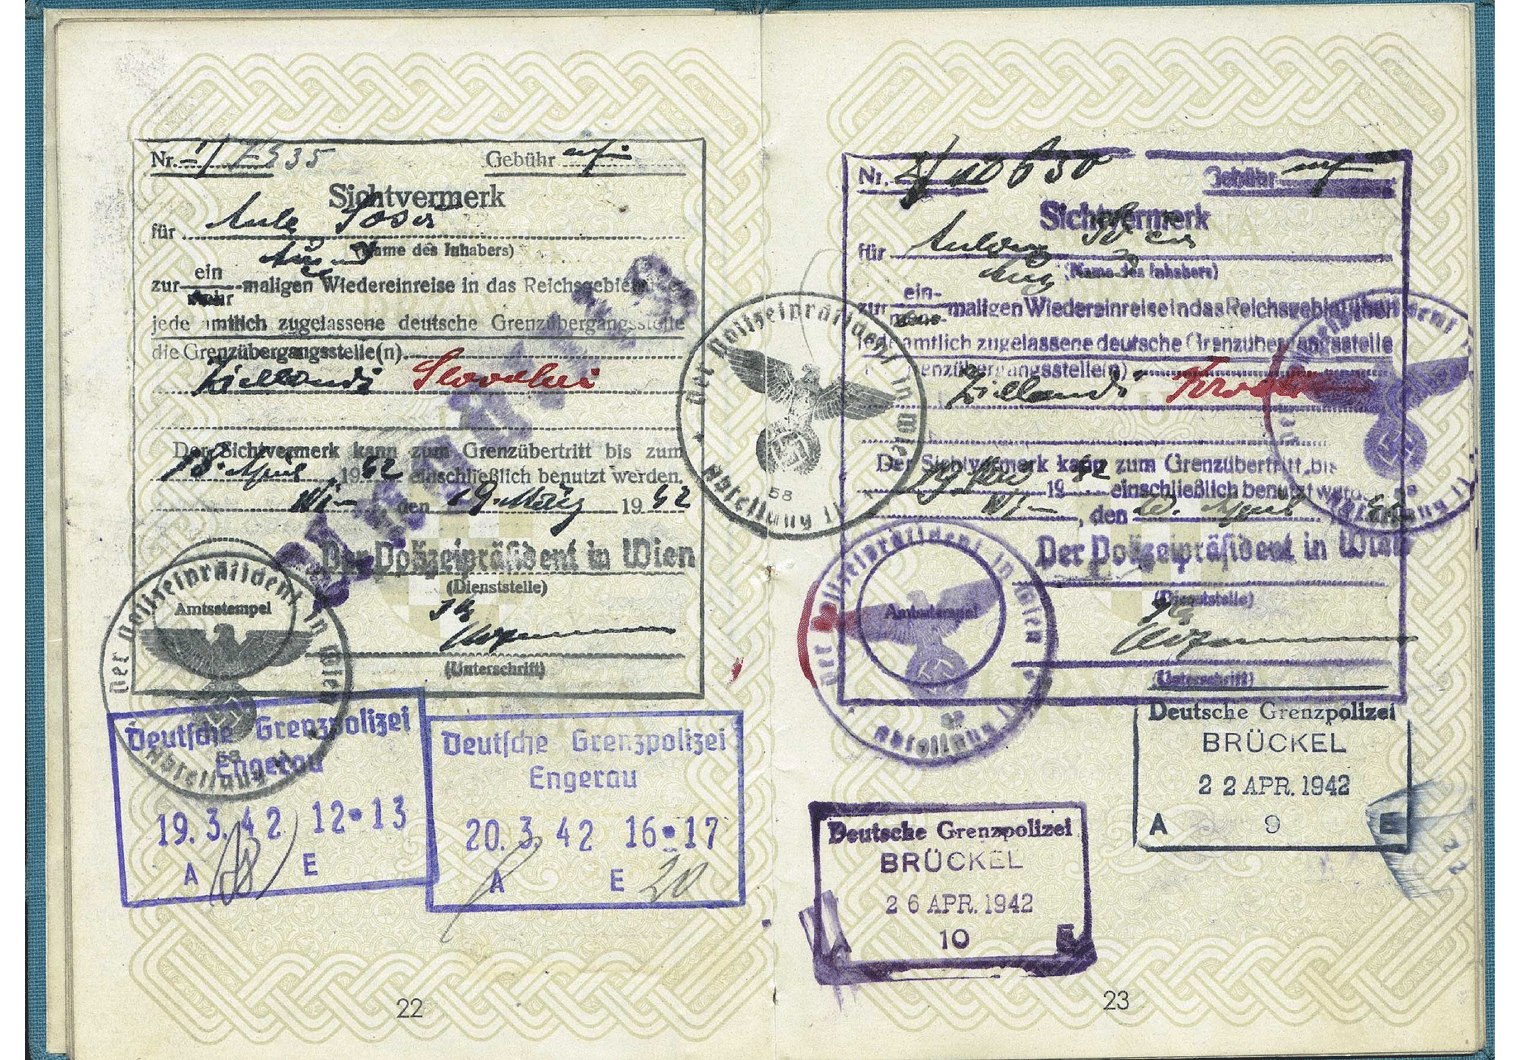 WW2 German passport visa